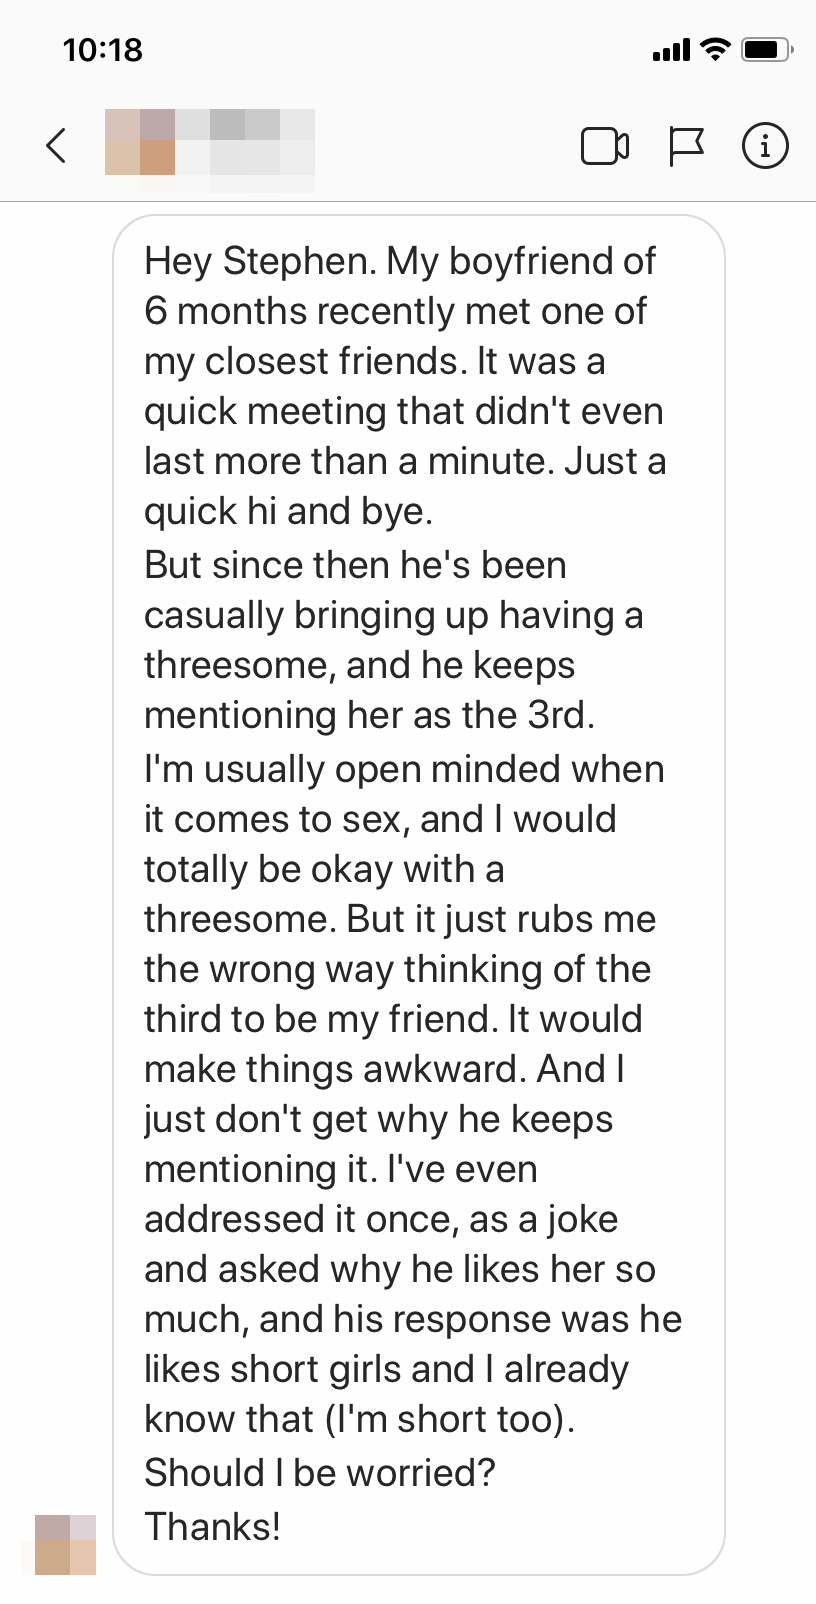 dmitry konovalov recommends having a threesome with a friend pic